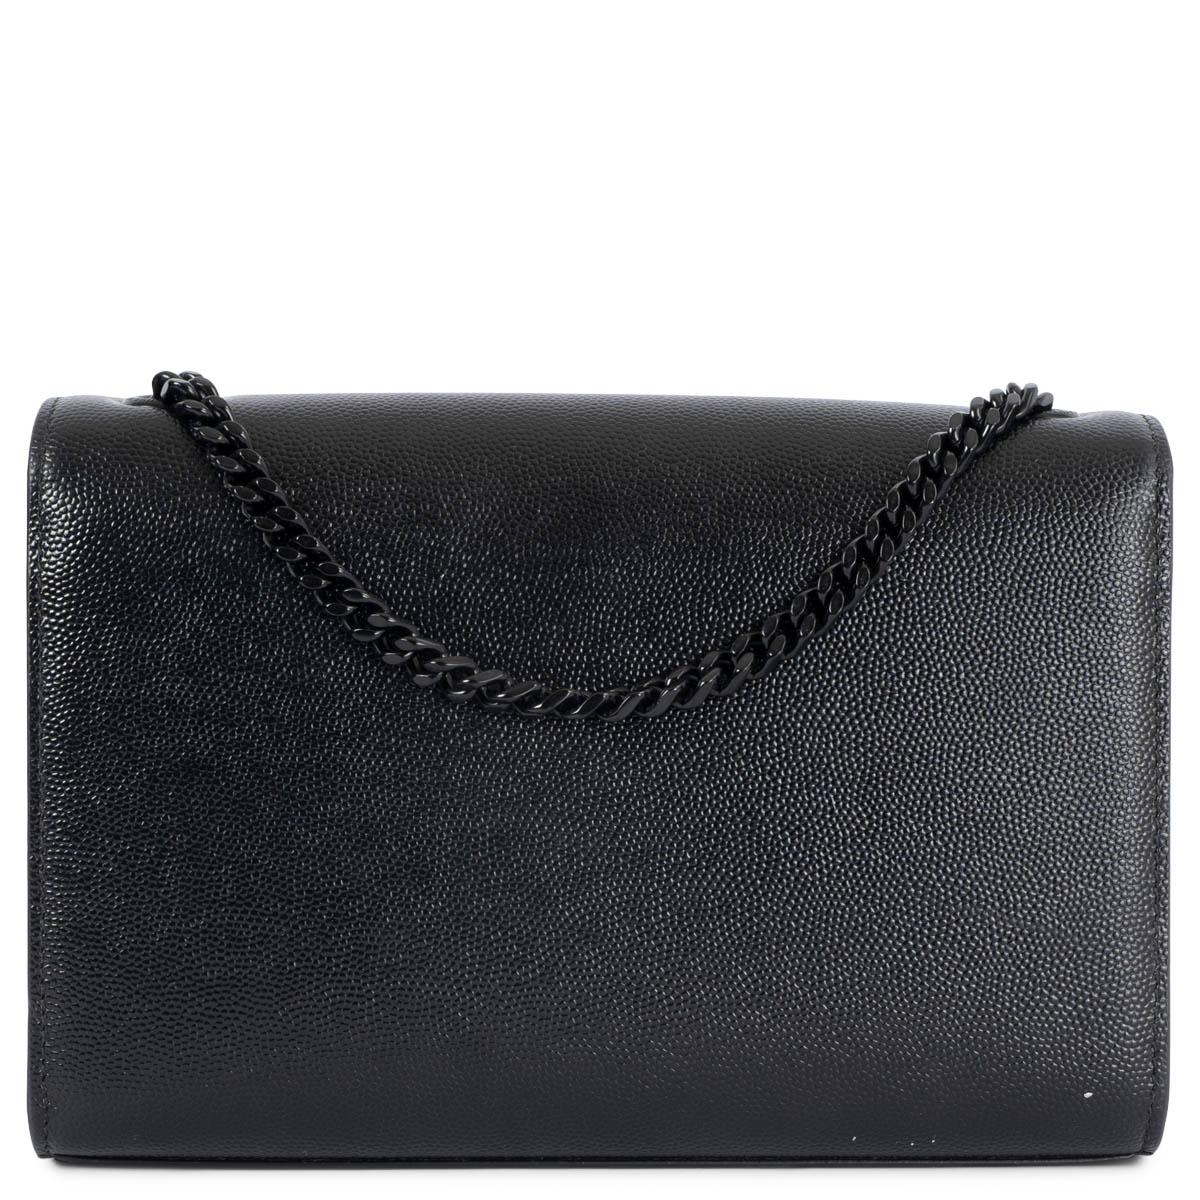 Black SAINT LAURENT black Grain de Poudre leather SMALL KATE Shoulder Bag